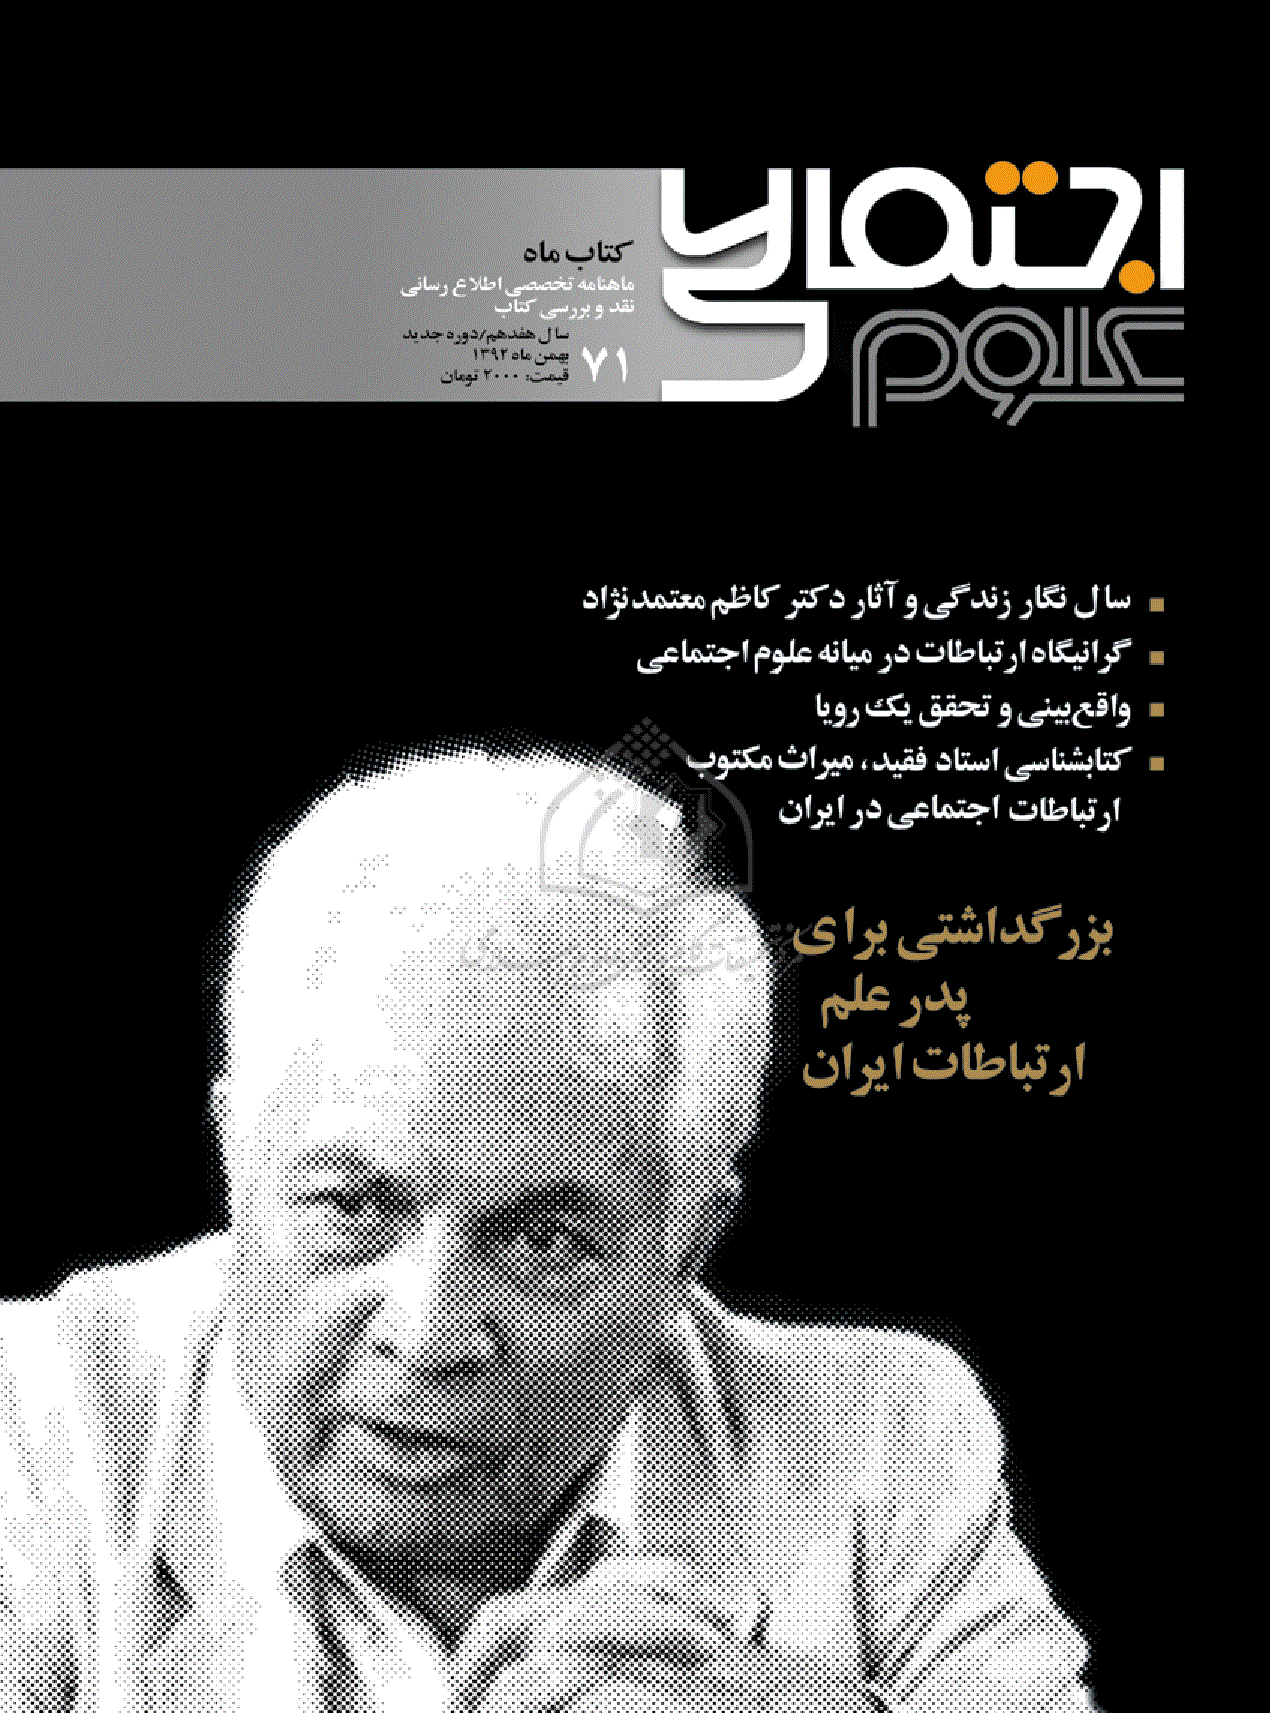 کتاب ماه علوم اجتماعی - بهمن 1392 - شماره 71